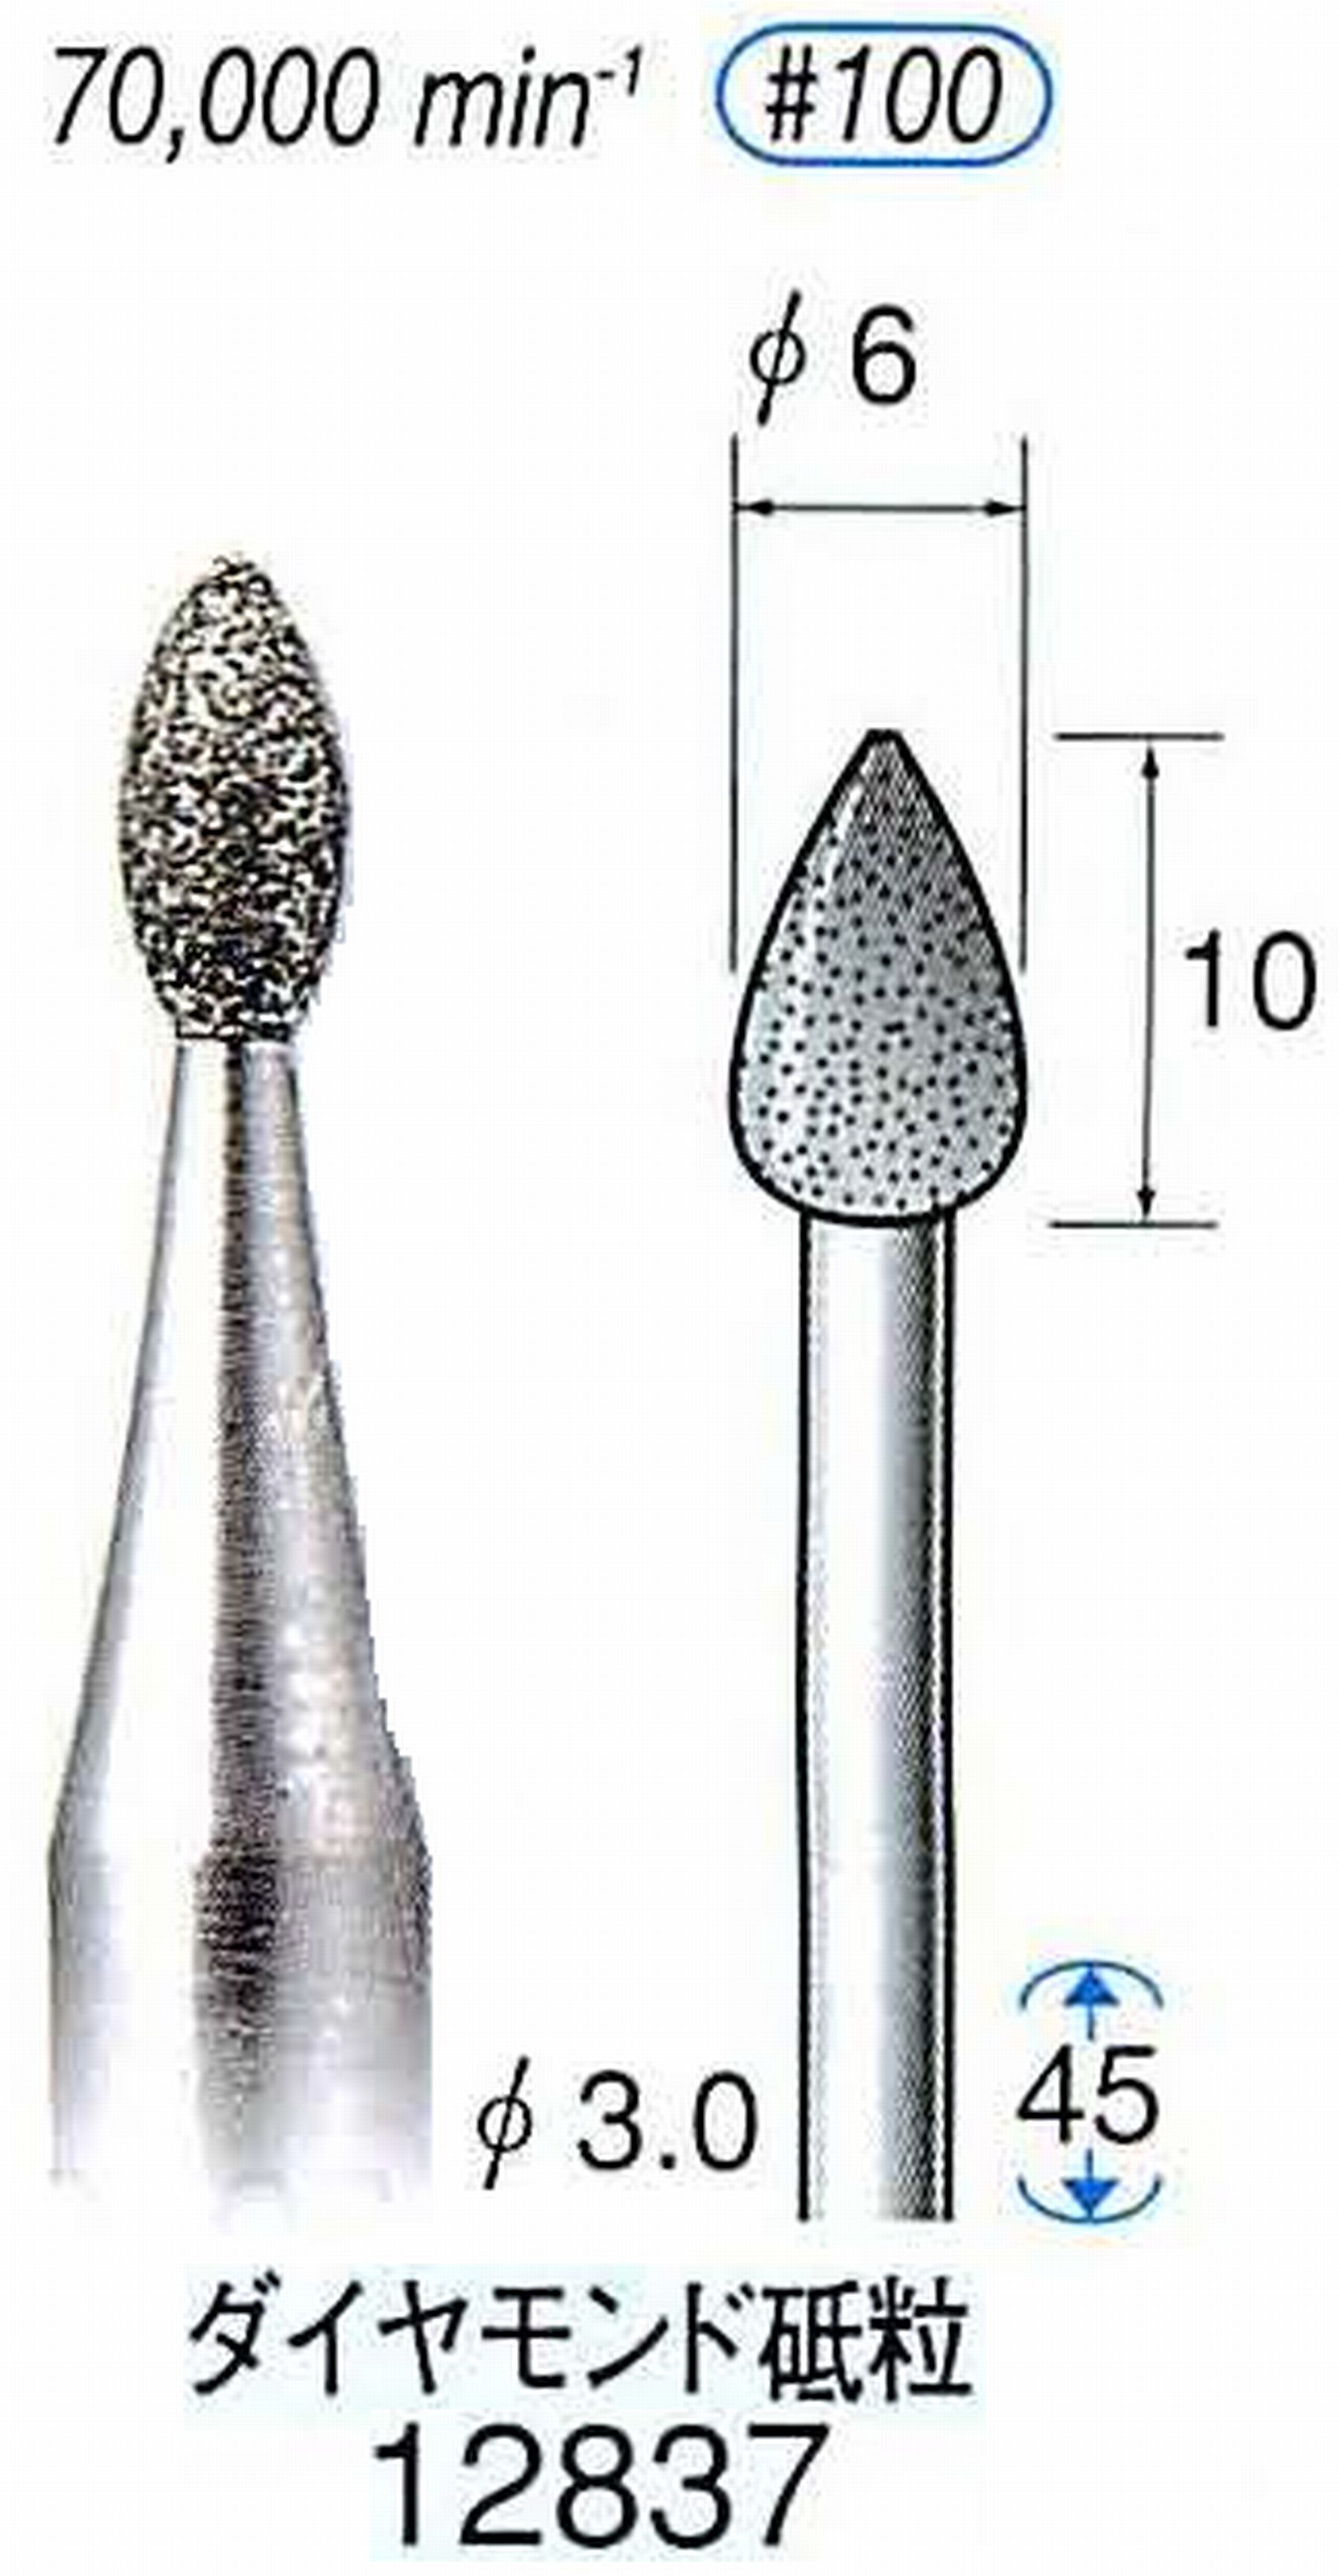 ナカニシ/NAKANISHI クラフト・ホビー用ダイヤモンドバー ダイヤモンド砥粒 軸径(シャンク)φ3.0mm 12837